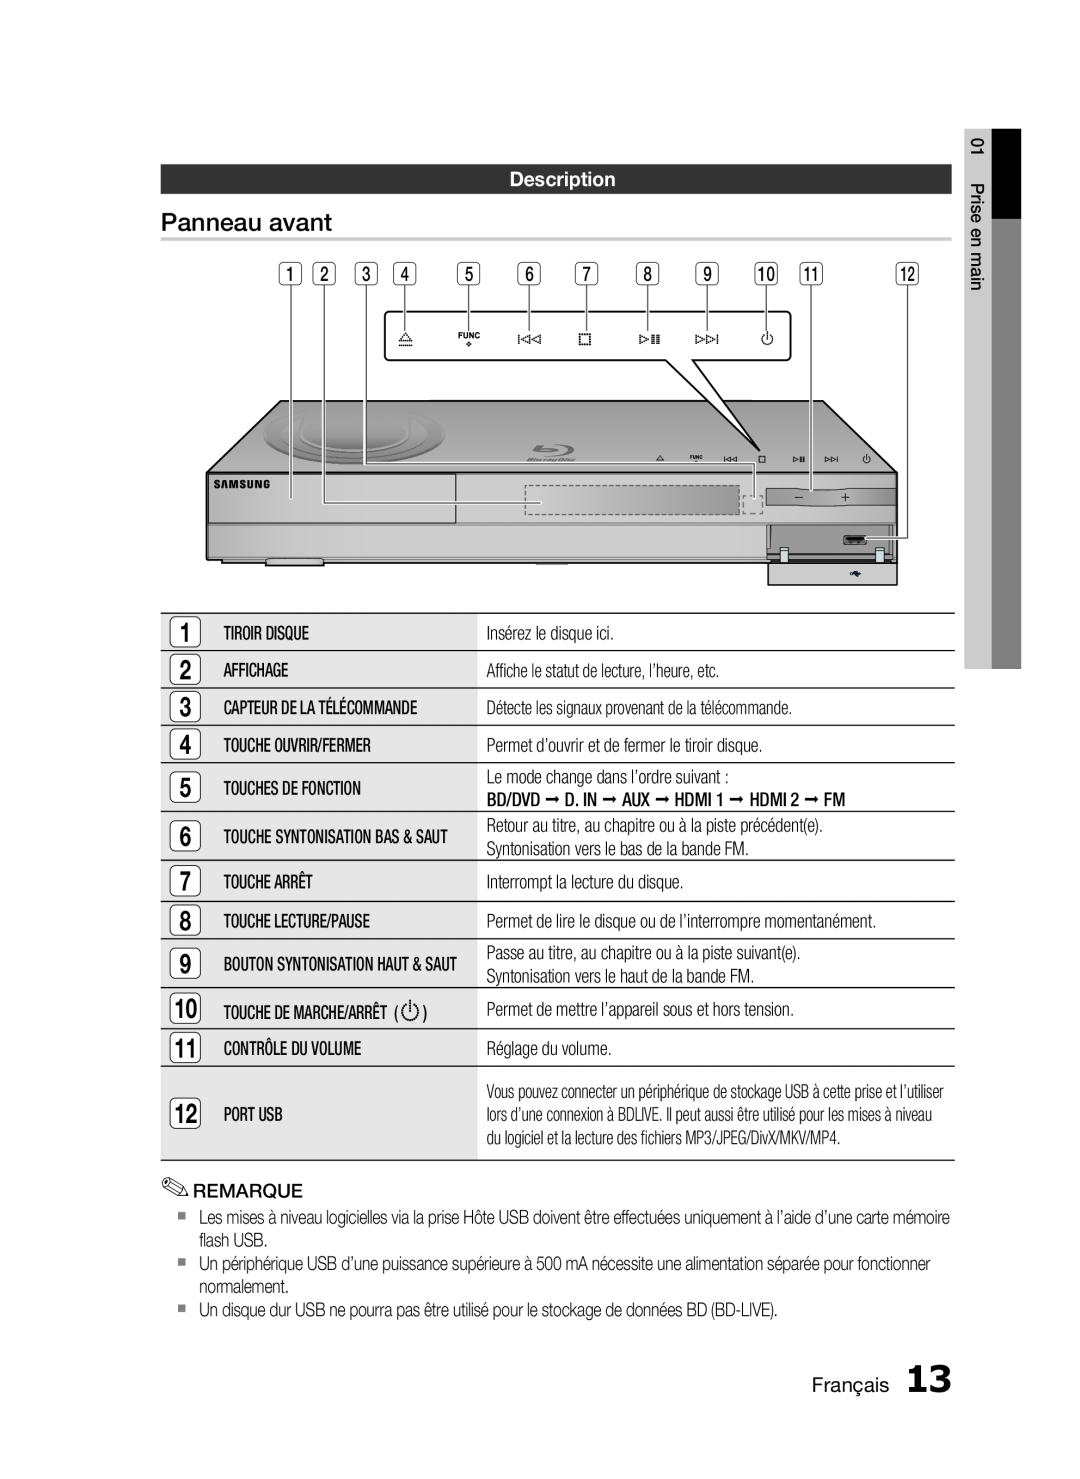 Samsung HT-C6200/XEF manual Panneau avant, Description, Français 